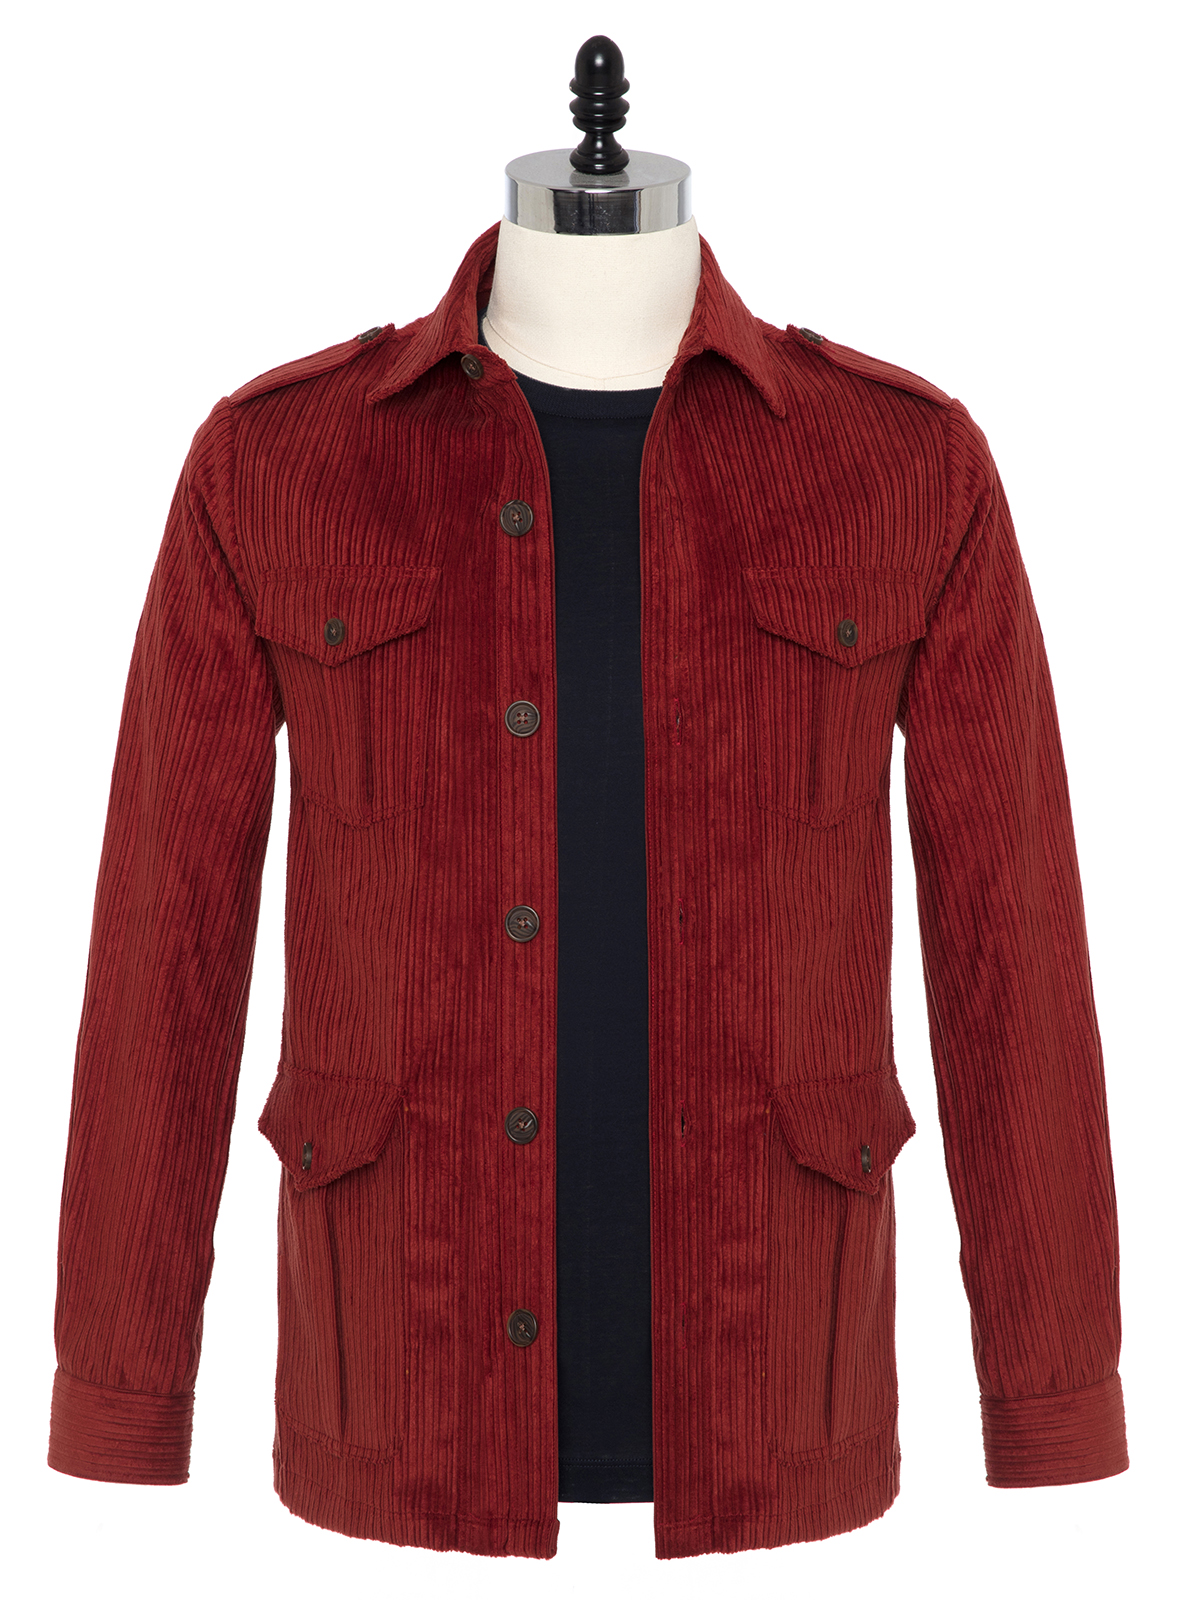 Germirli - Germirli Kiremit Kırmızı Kalın Fitilli Tailor Fit Ceket Gömlek